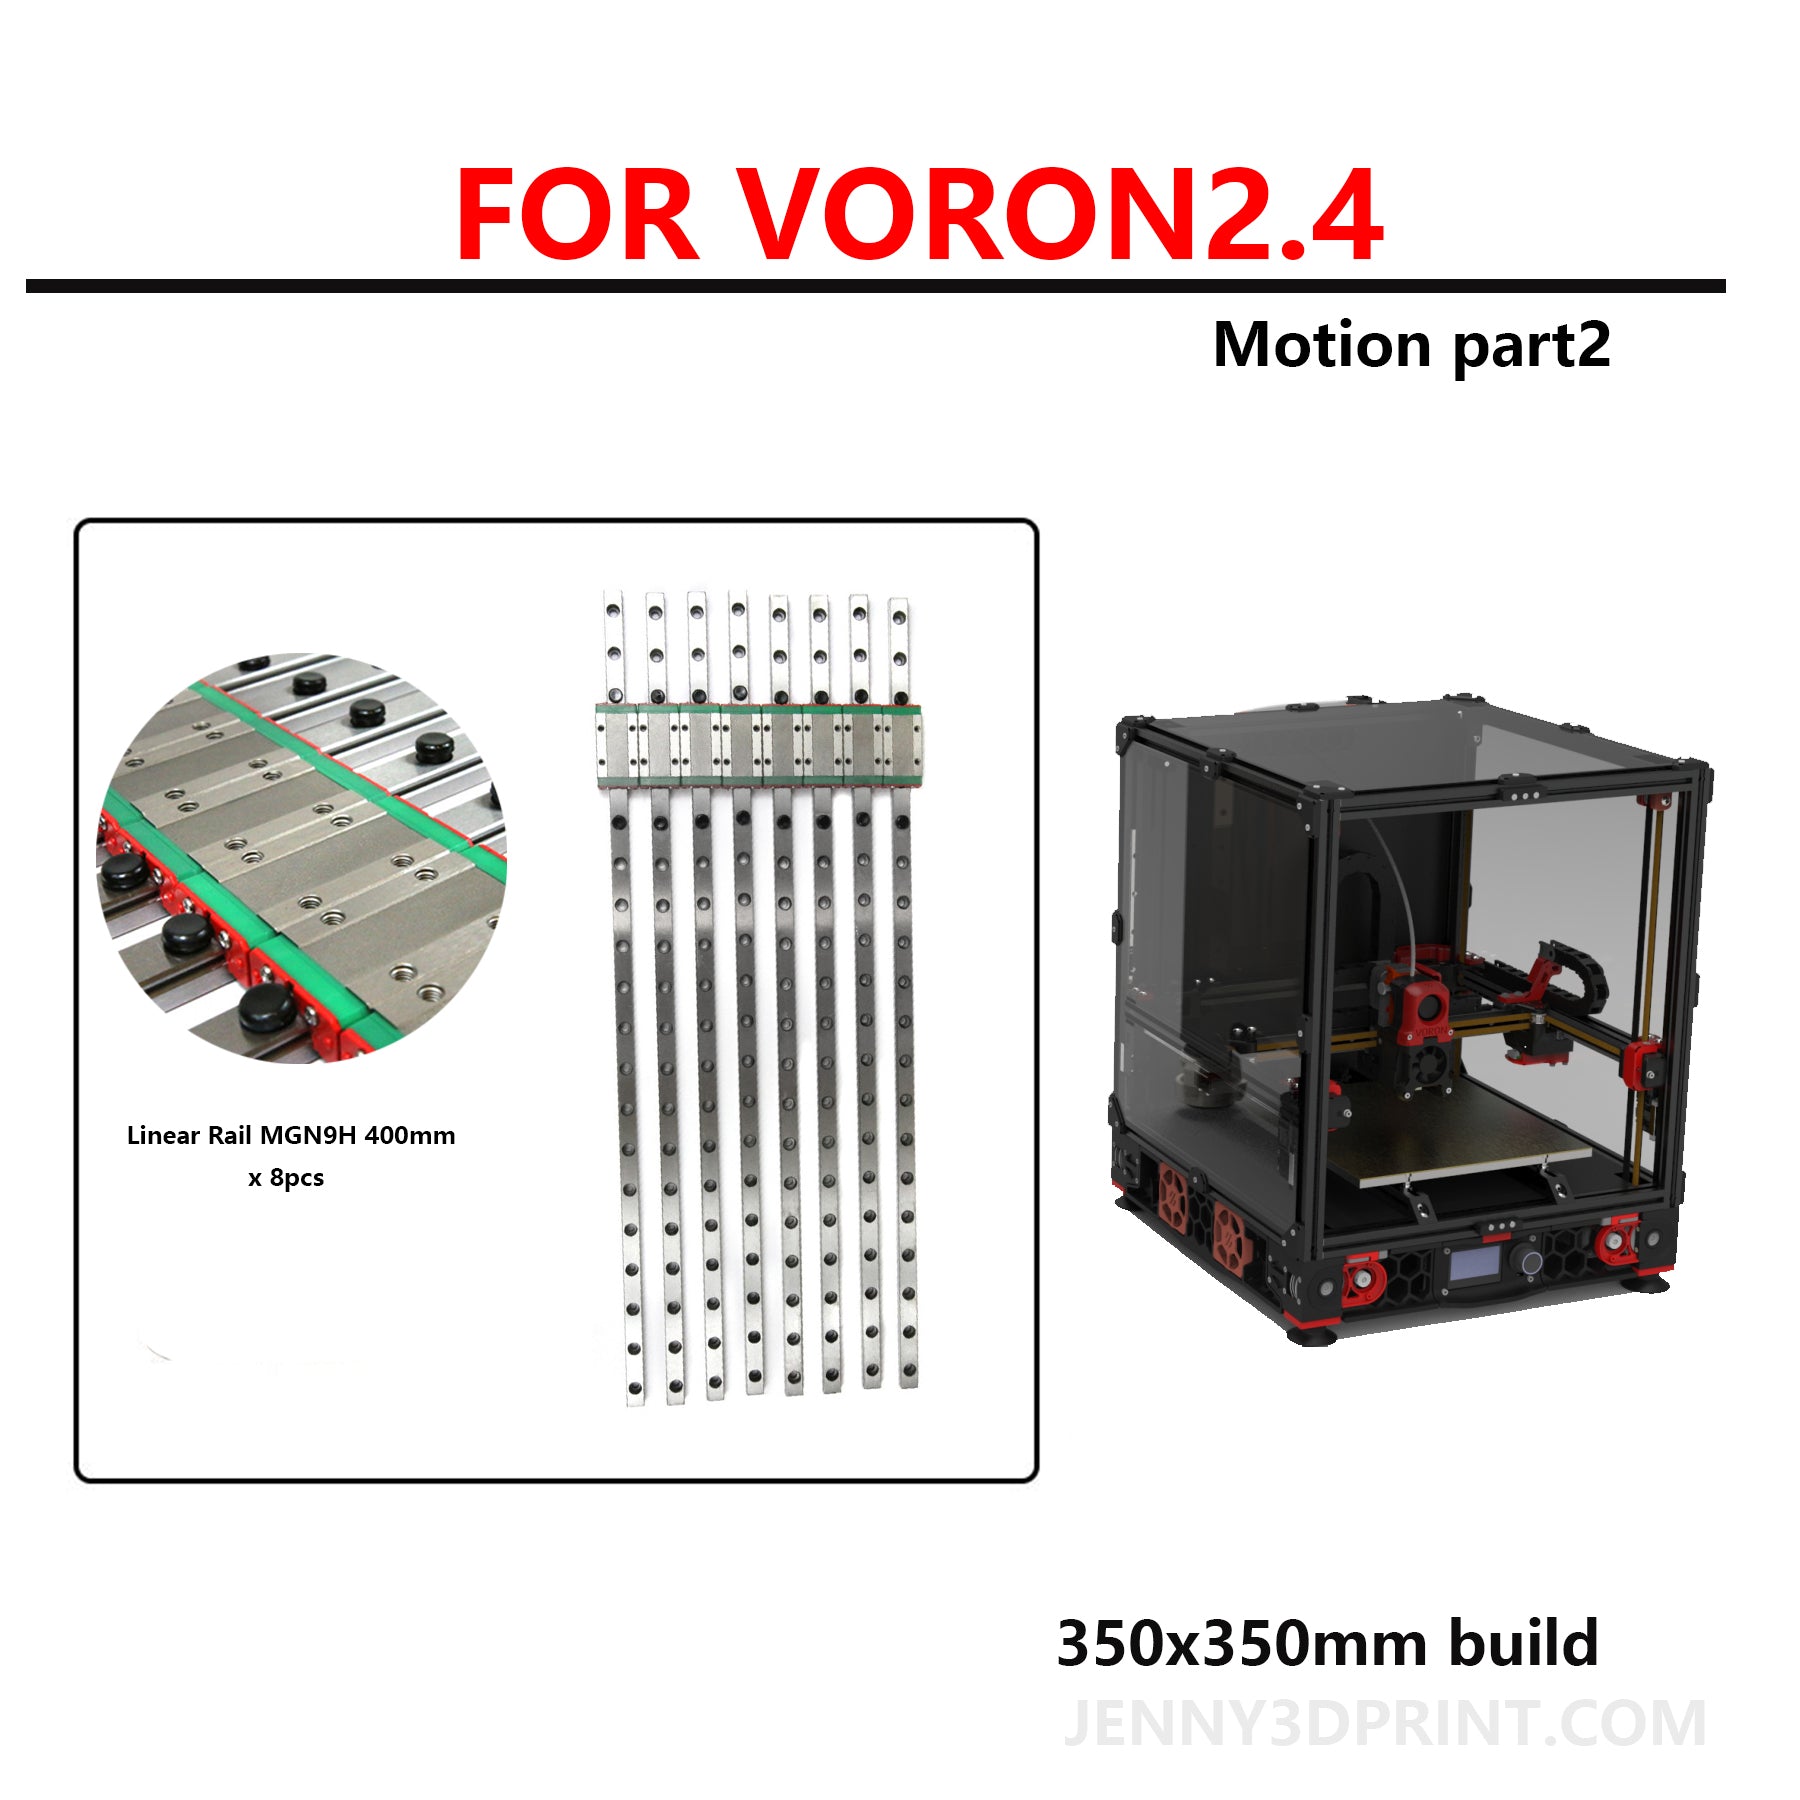 Linear rails kit for Voron 2.4 350x350 mm Motion part2